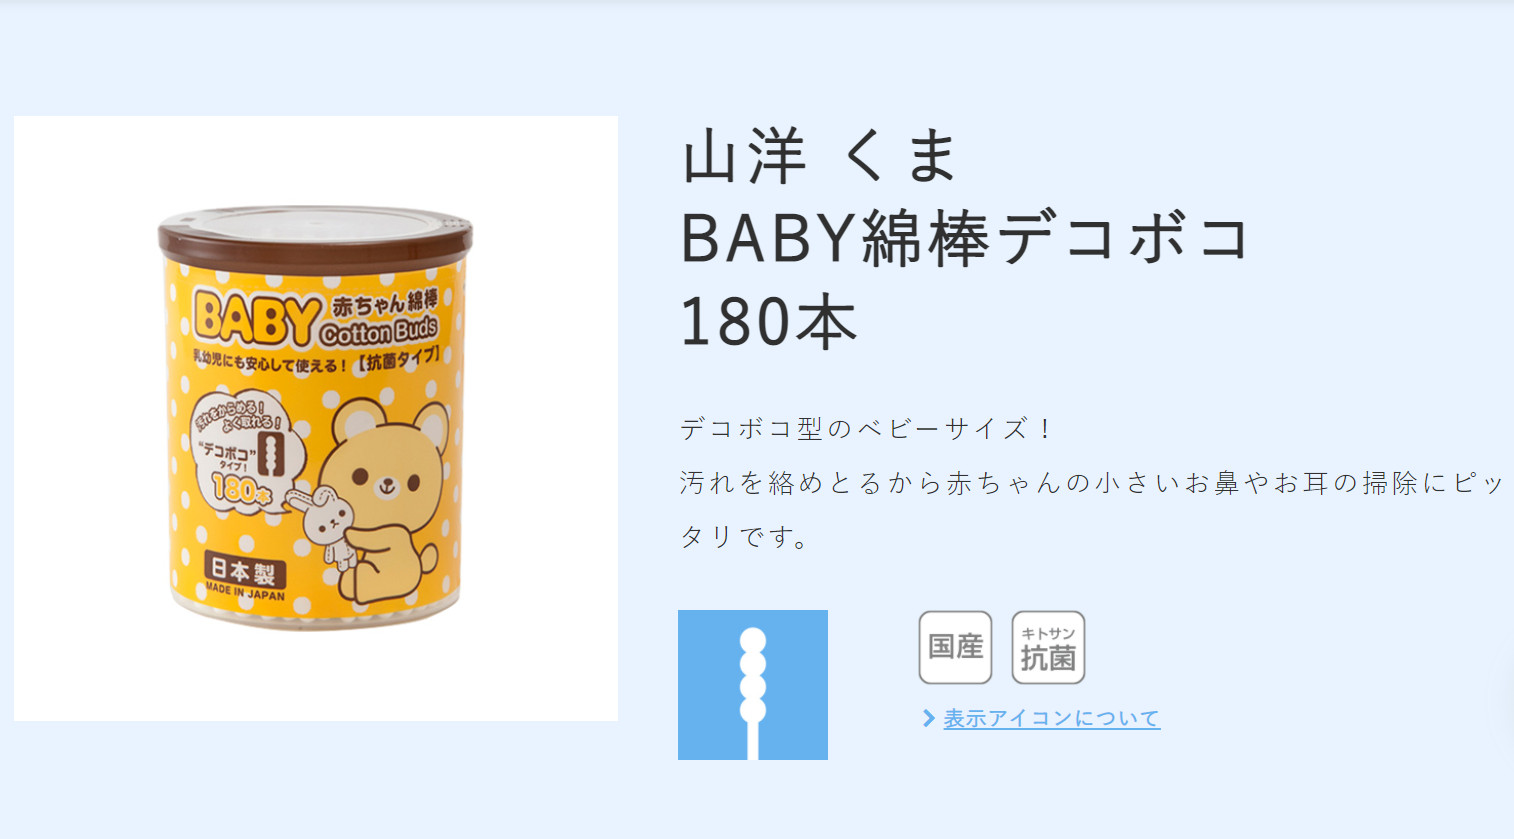 Hộp tăm bông ngoáy tai kháng khuẩn cao cấp dành cho bé hàng chính hãng Sanyo Nhật Bản - Made in Japan